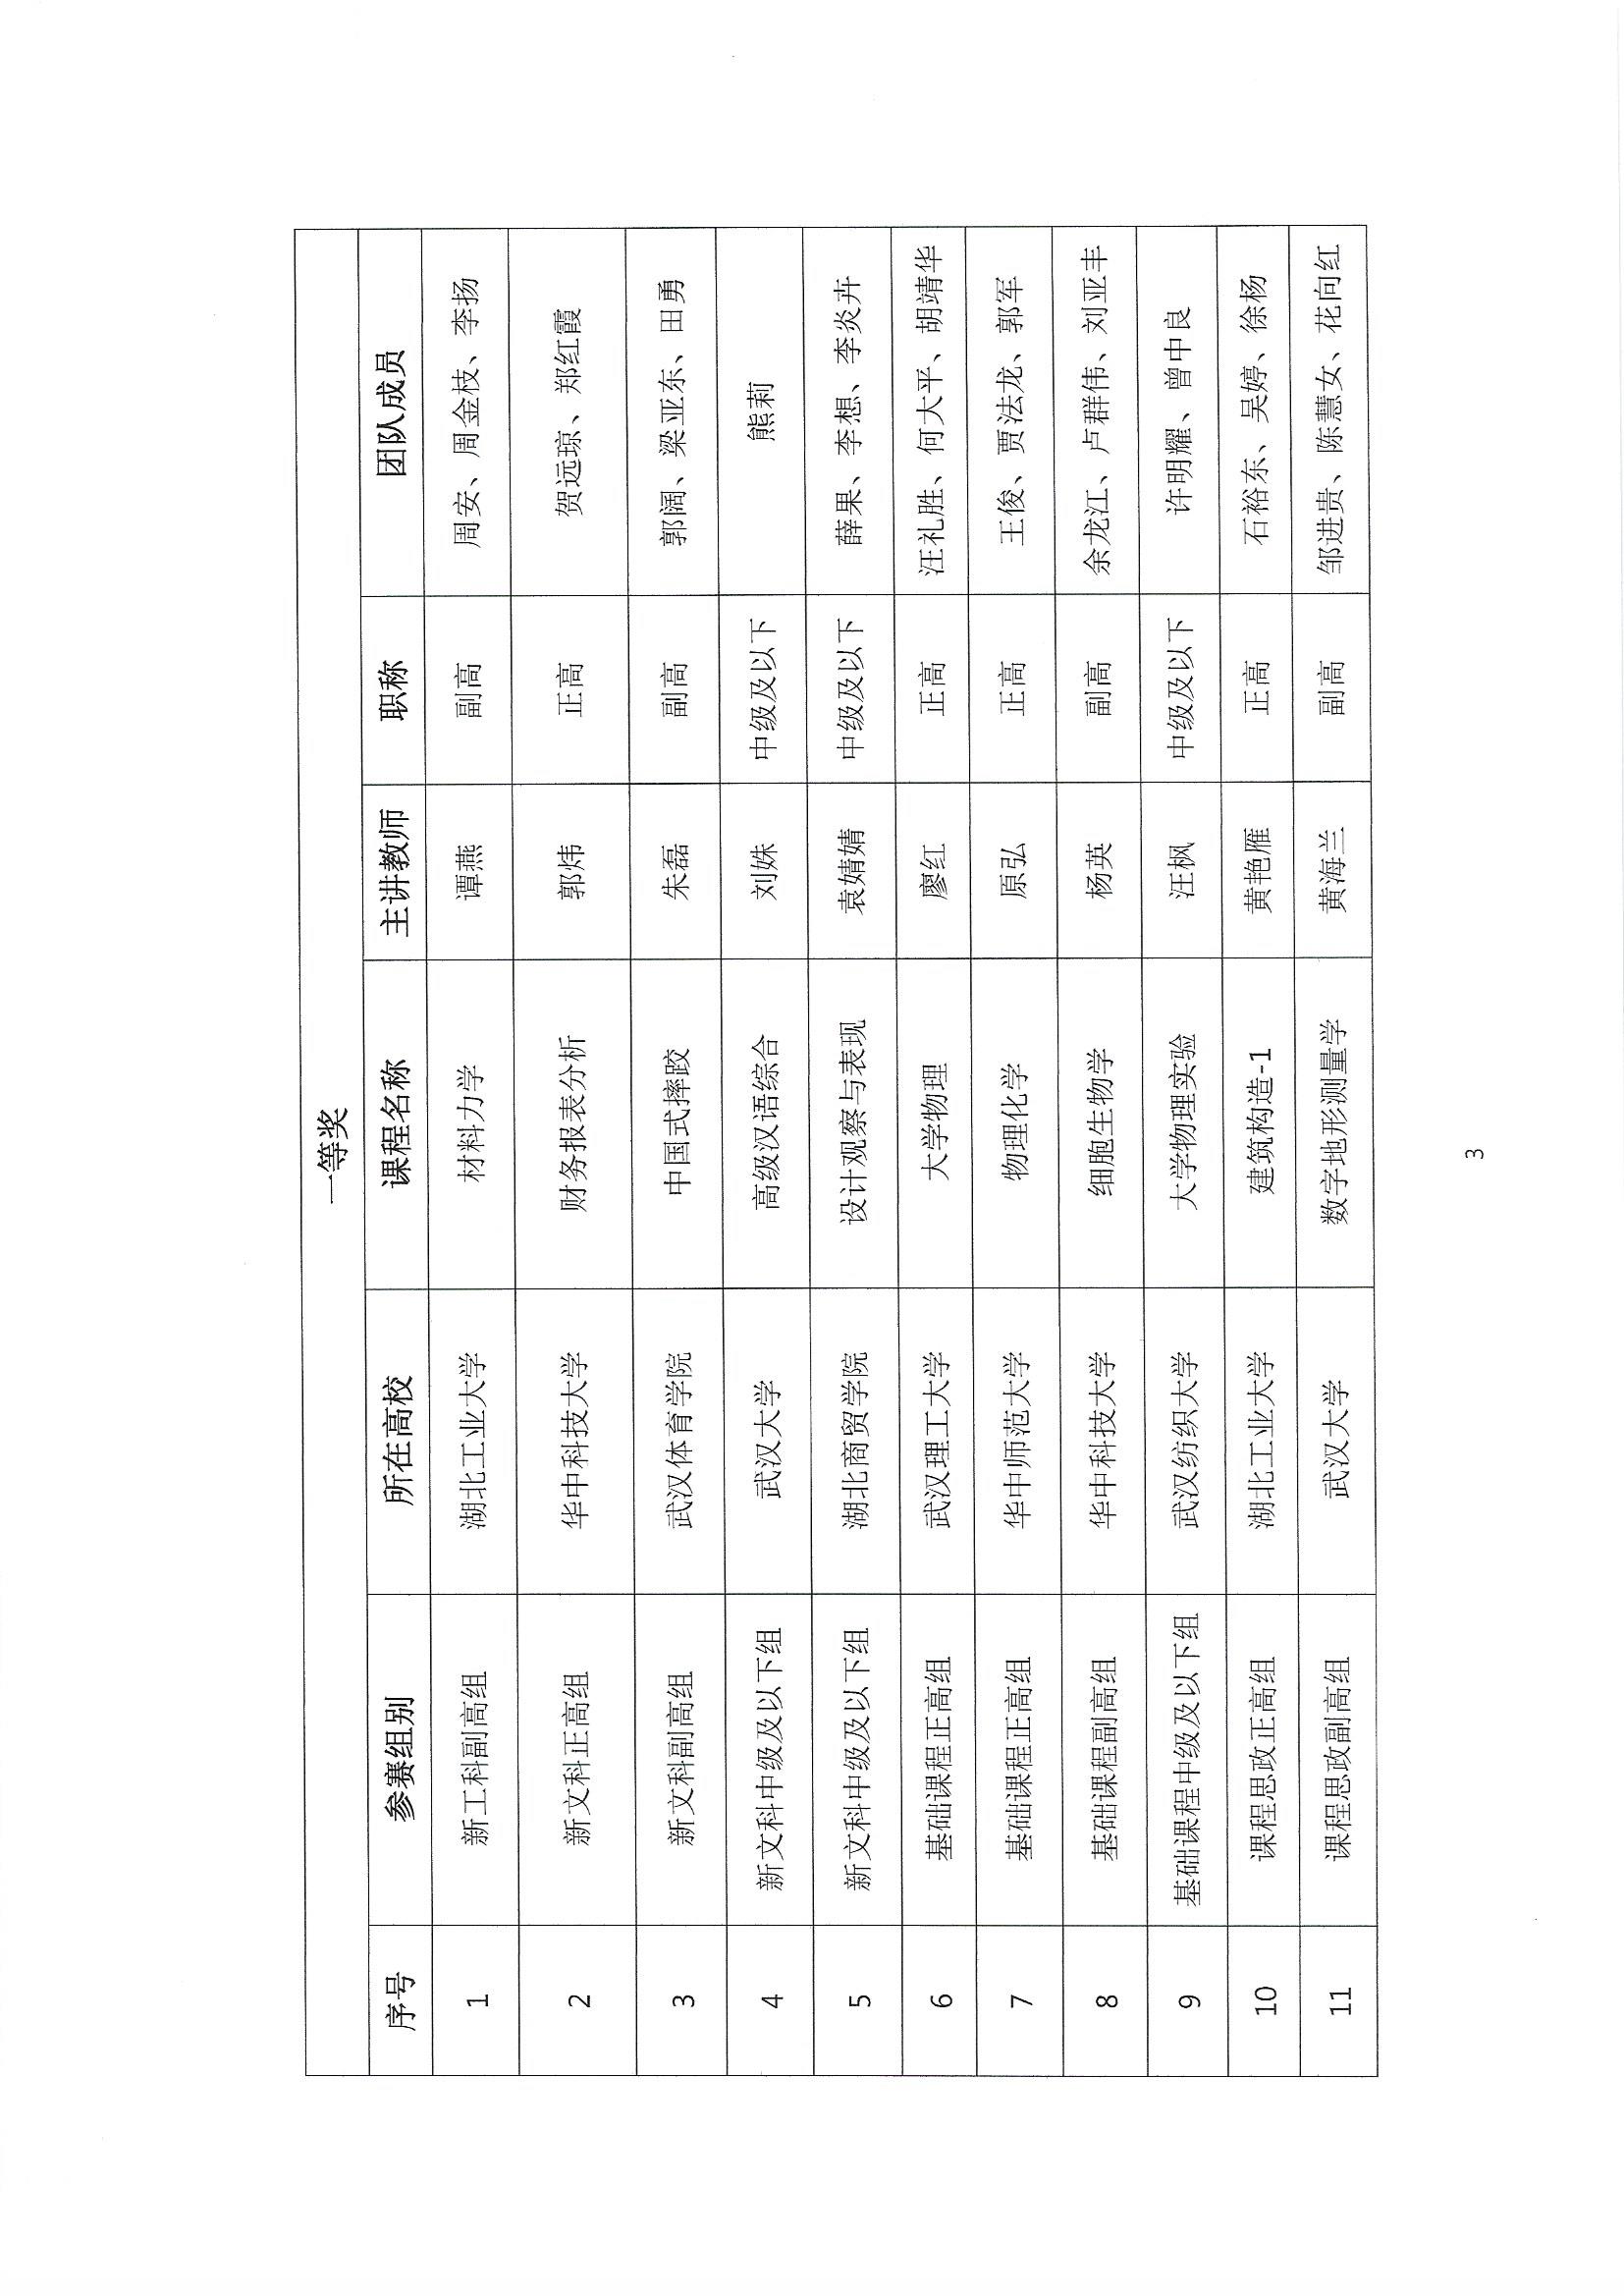 (盖章发布版）关于公布第三届湖北省高校教师教学创新大赛评审结果的通知_页面_3.jpg